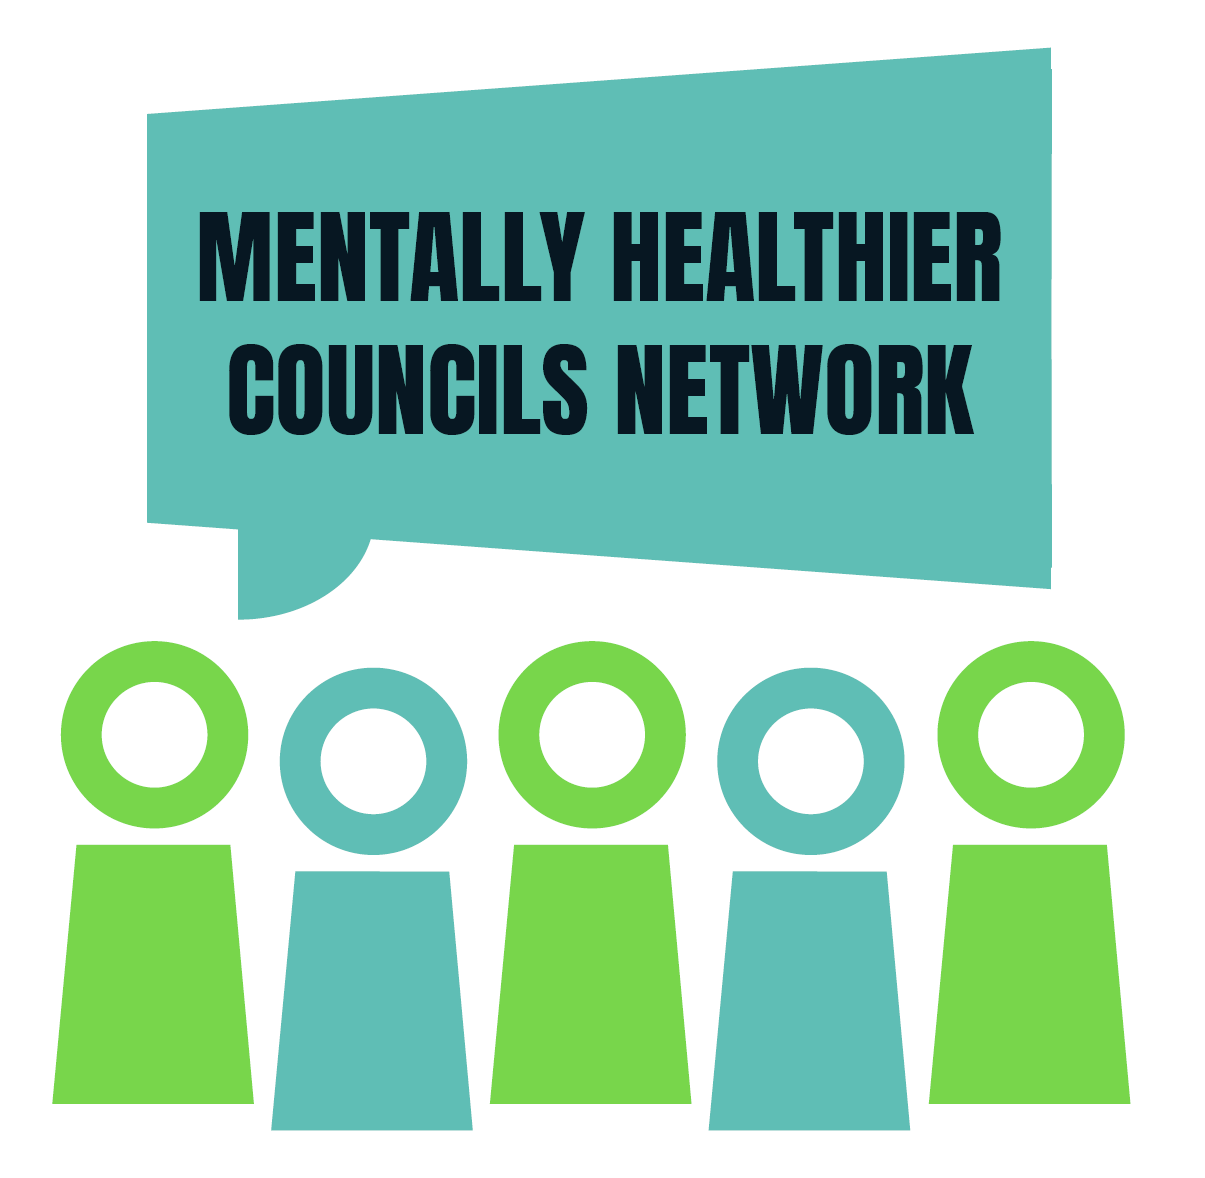 Mentally Healthier Councils Network logo